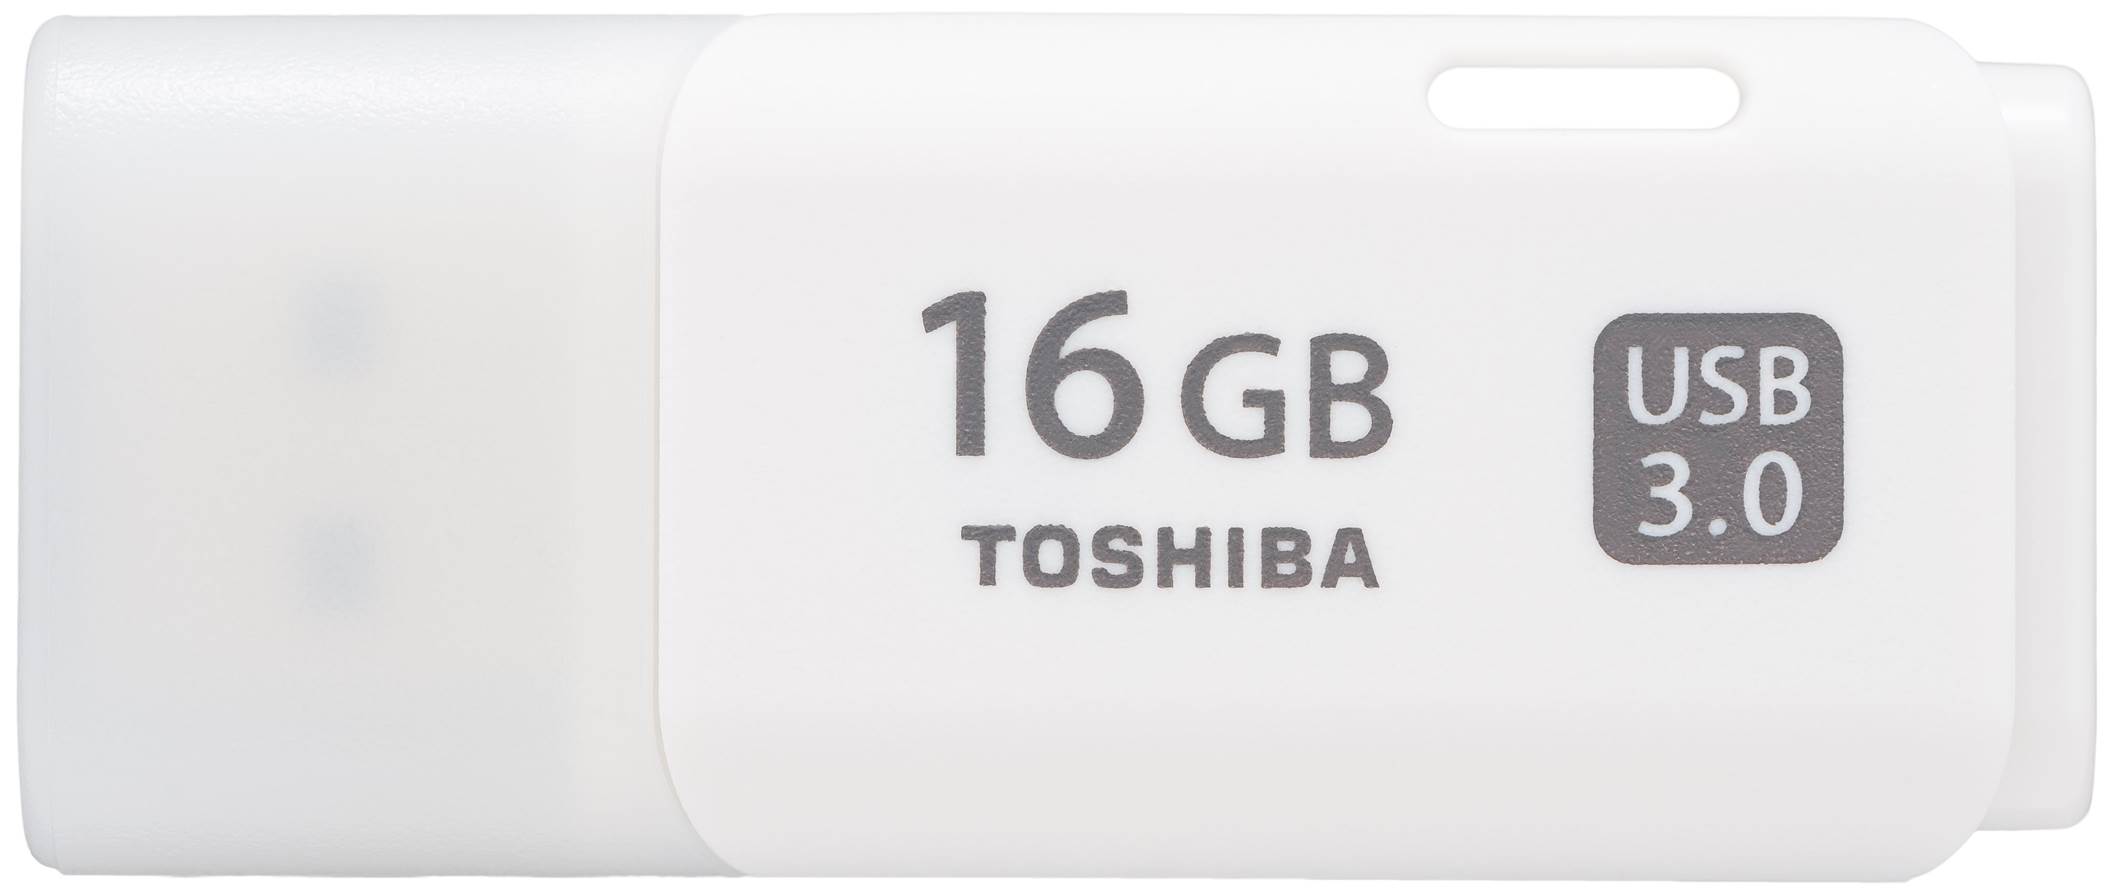 USB FD TOSHIBA HAYABUSA 16 GB USB 3.0 в Києві